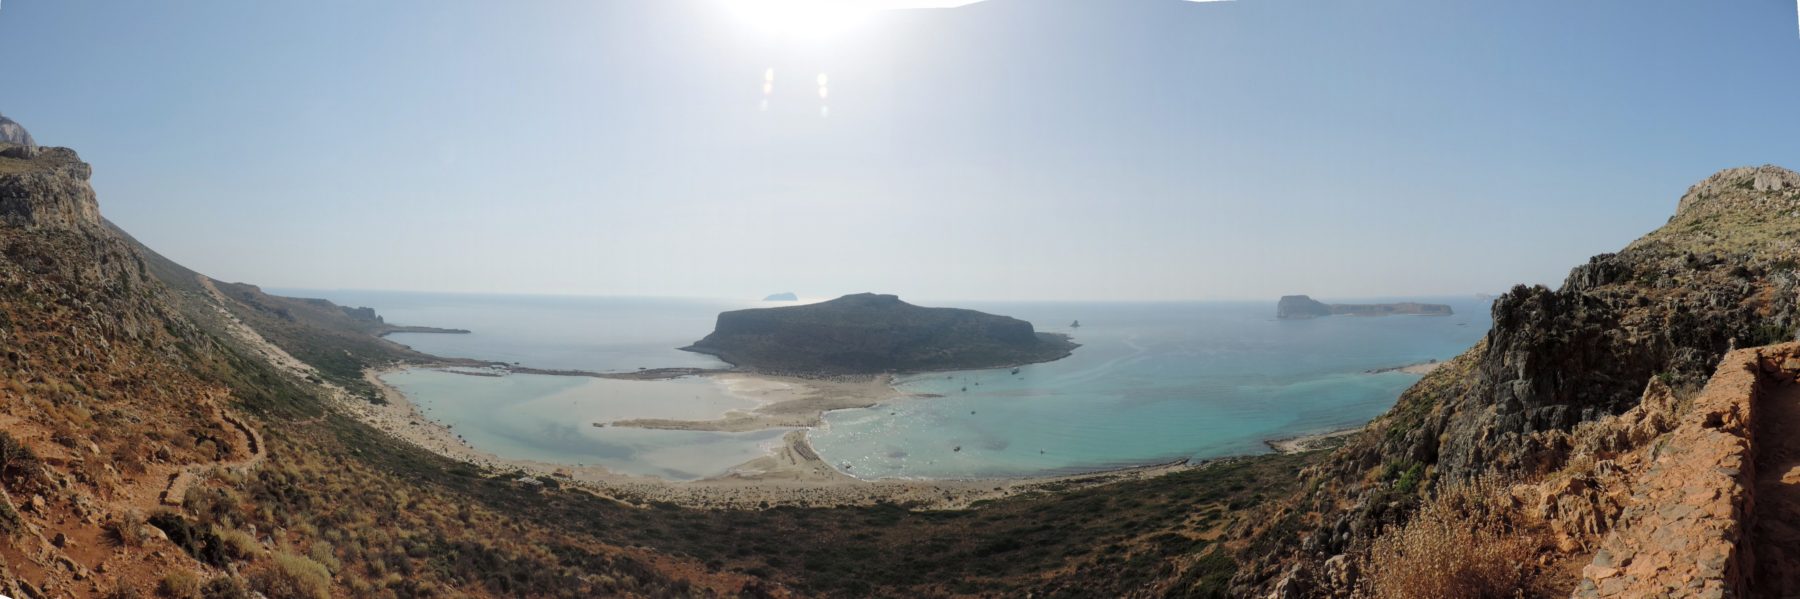 balos-beach-panorama01 